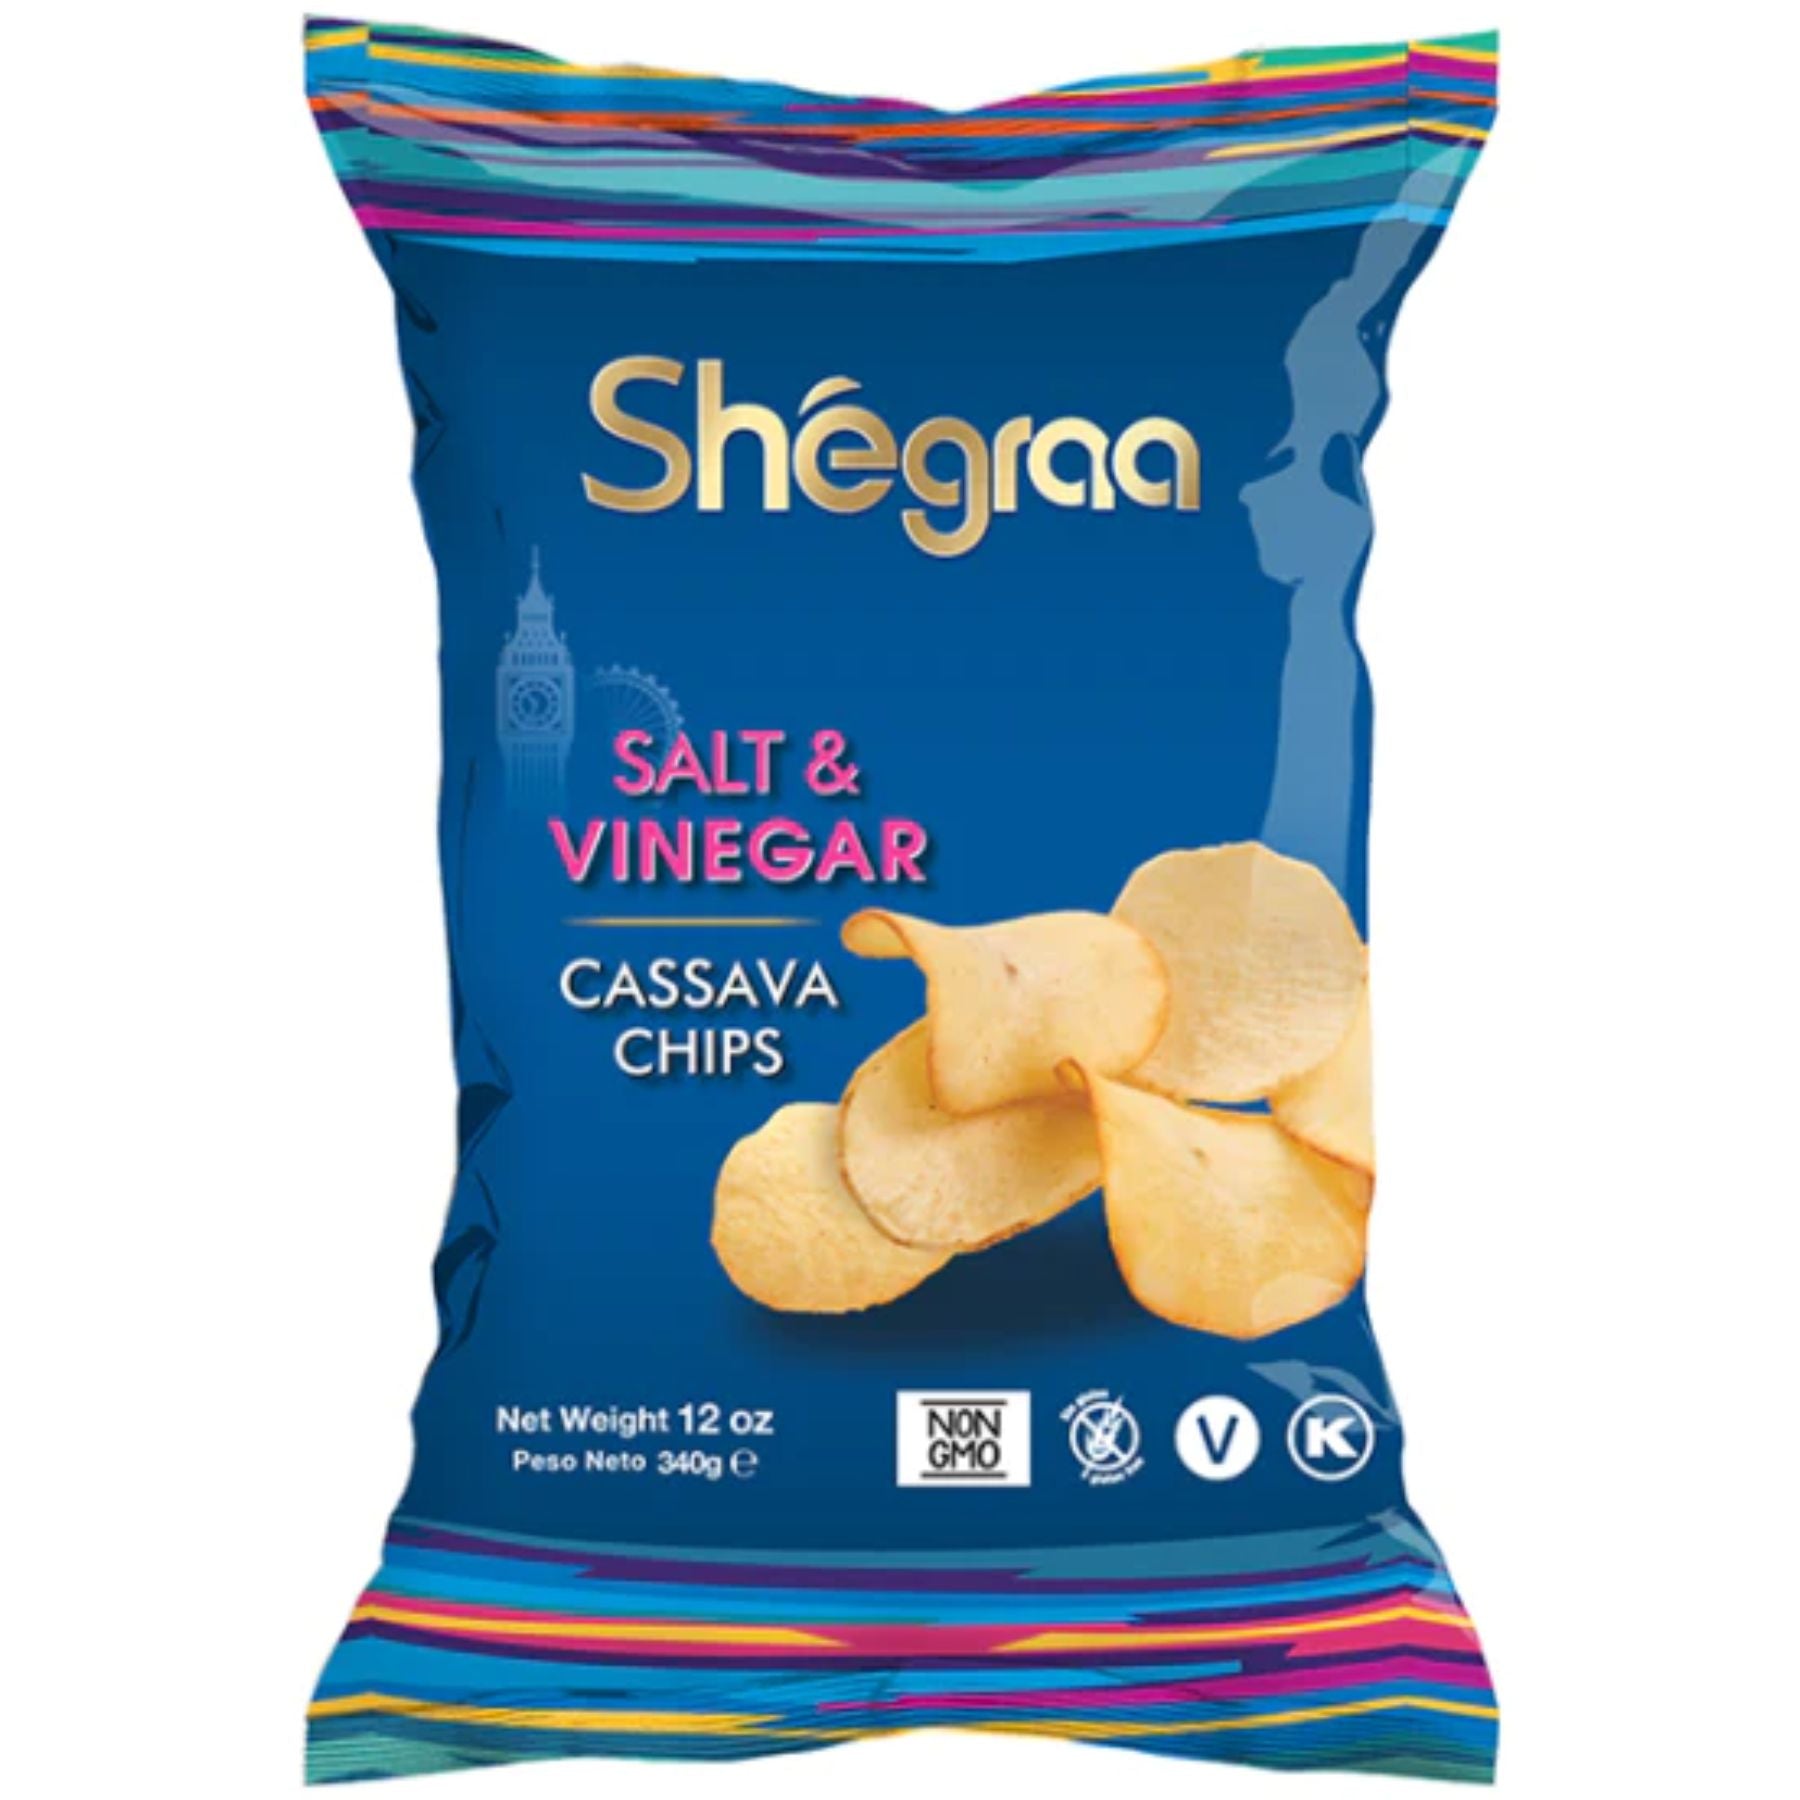 Shegraa Salt & Vinegar Cassava Chips 284g